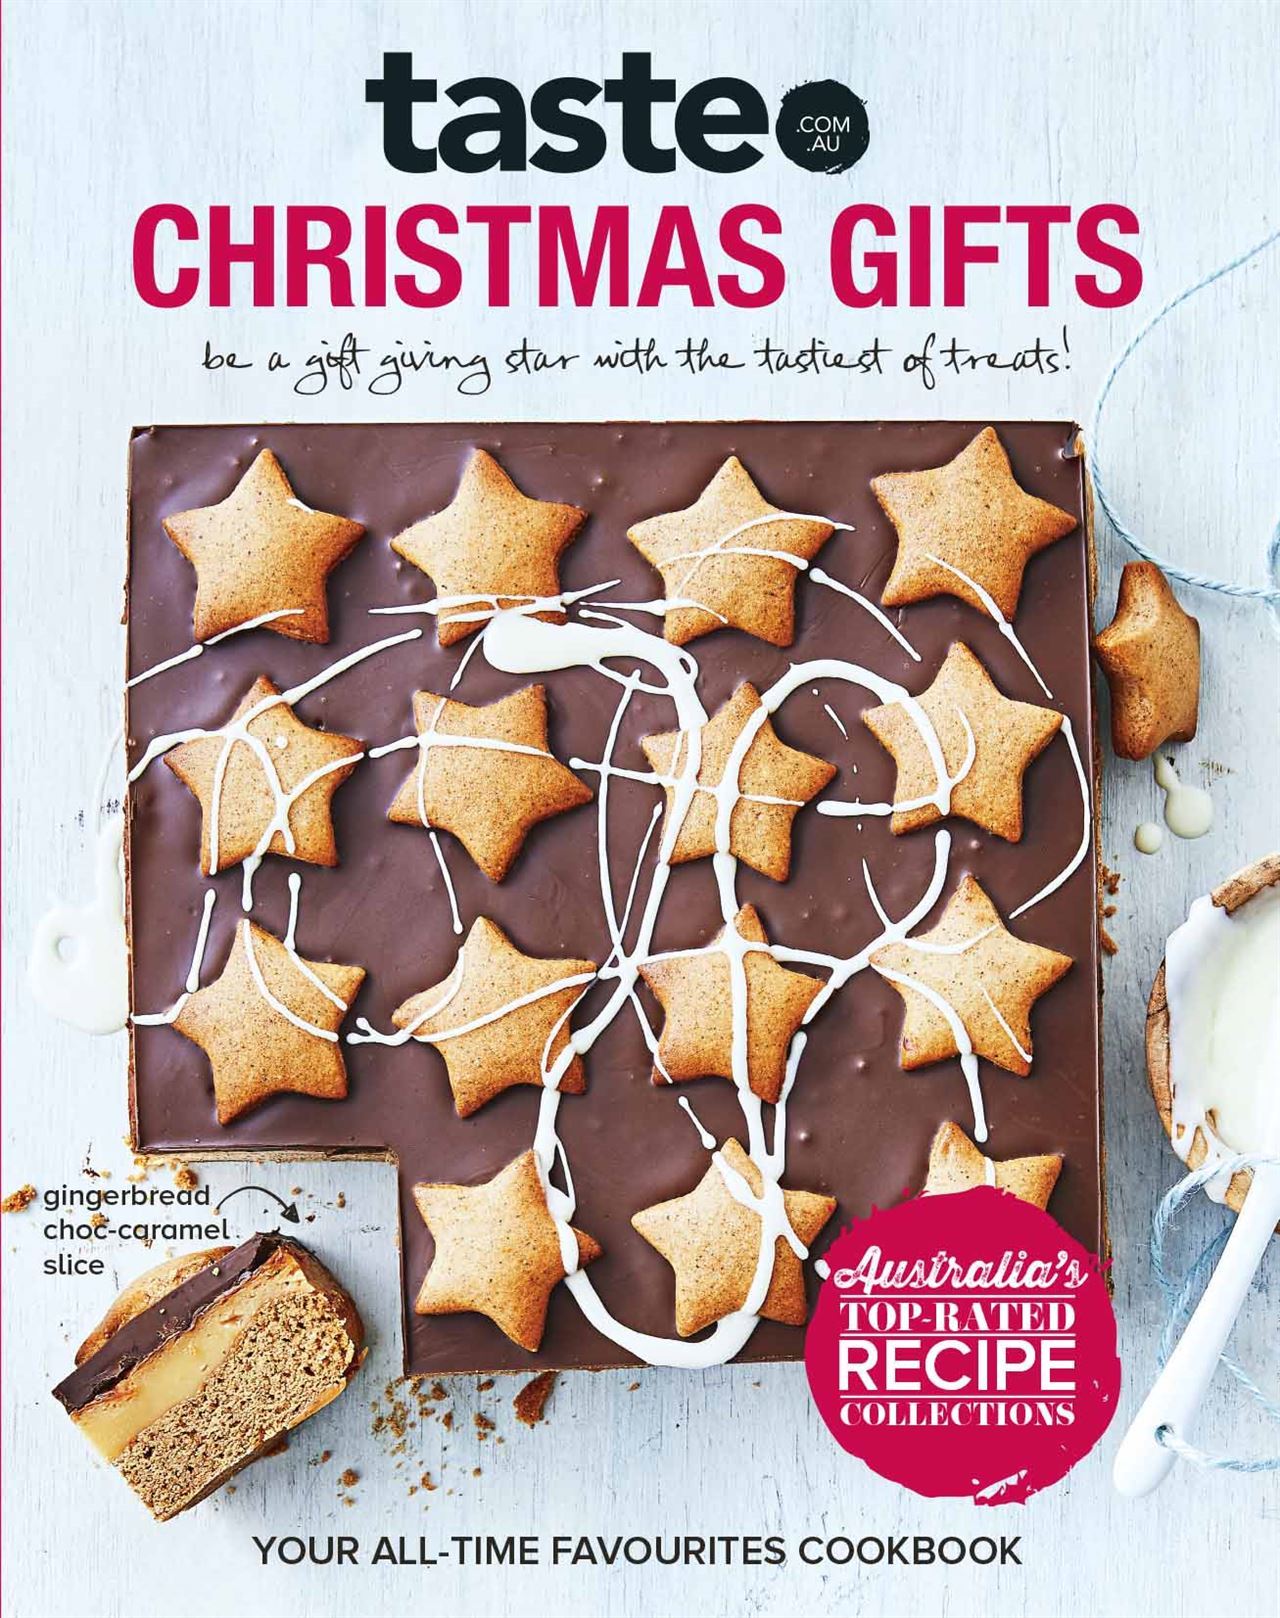 taste.com.au Christmas Gifts Cookbook 2019